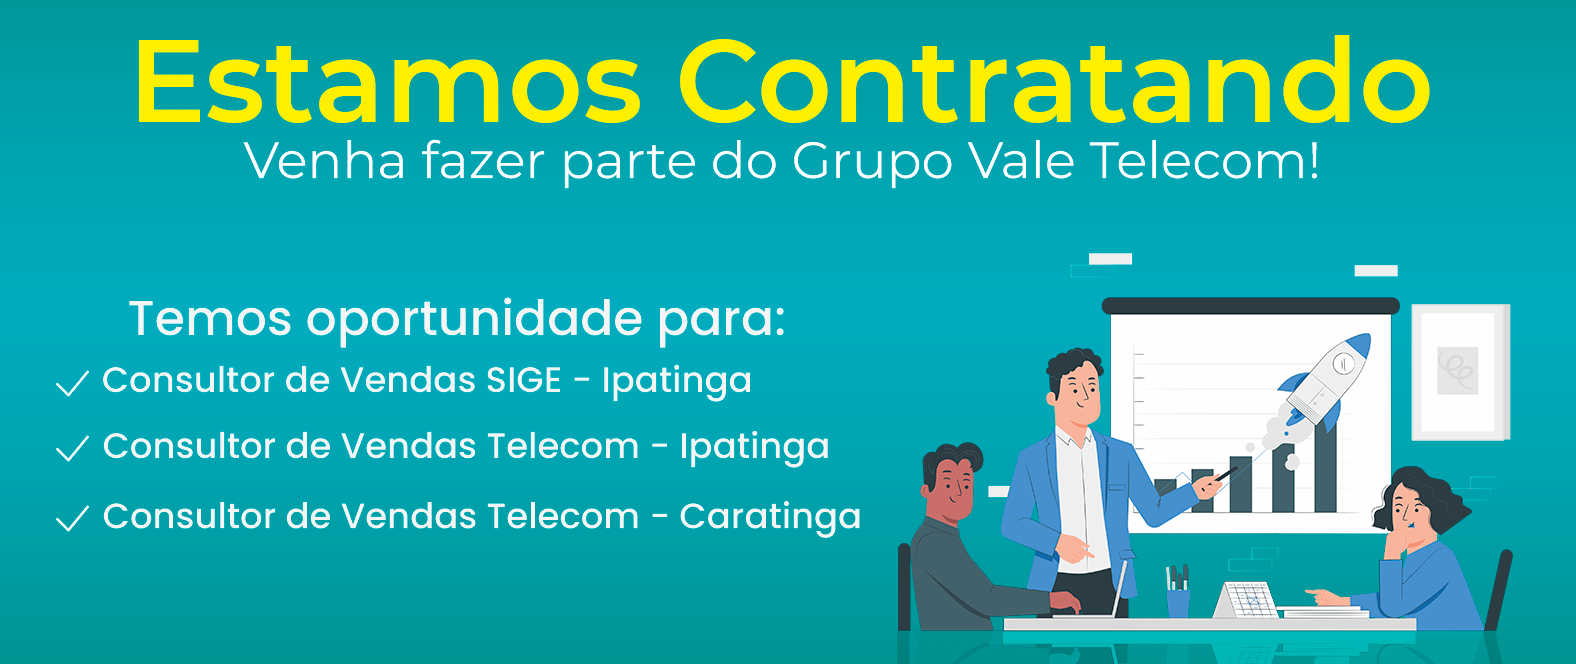 9 - Vagas - Site Telecom